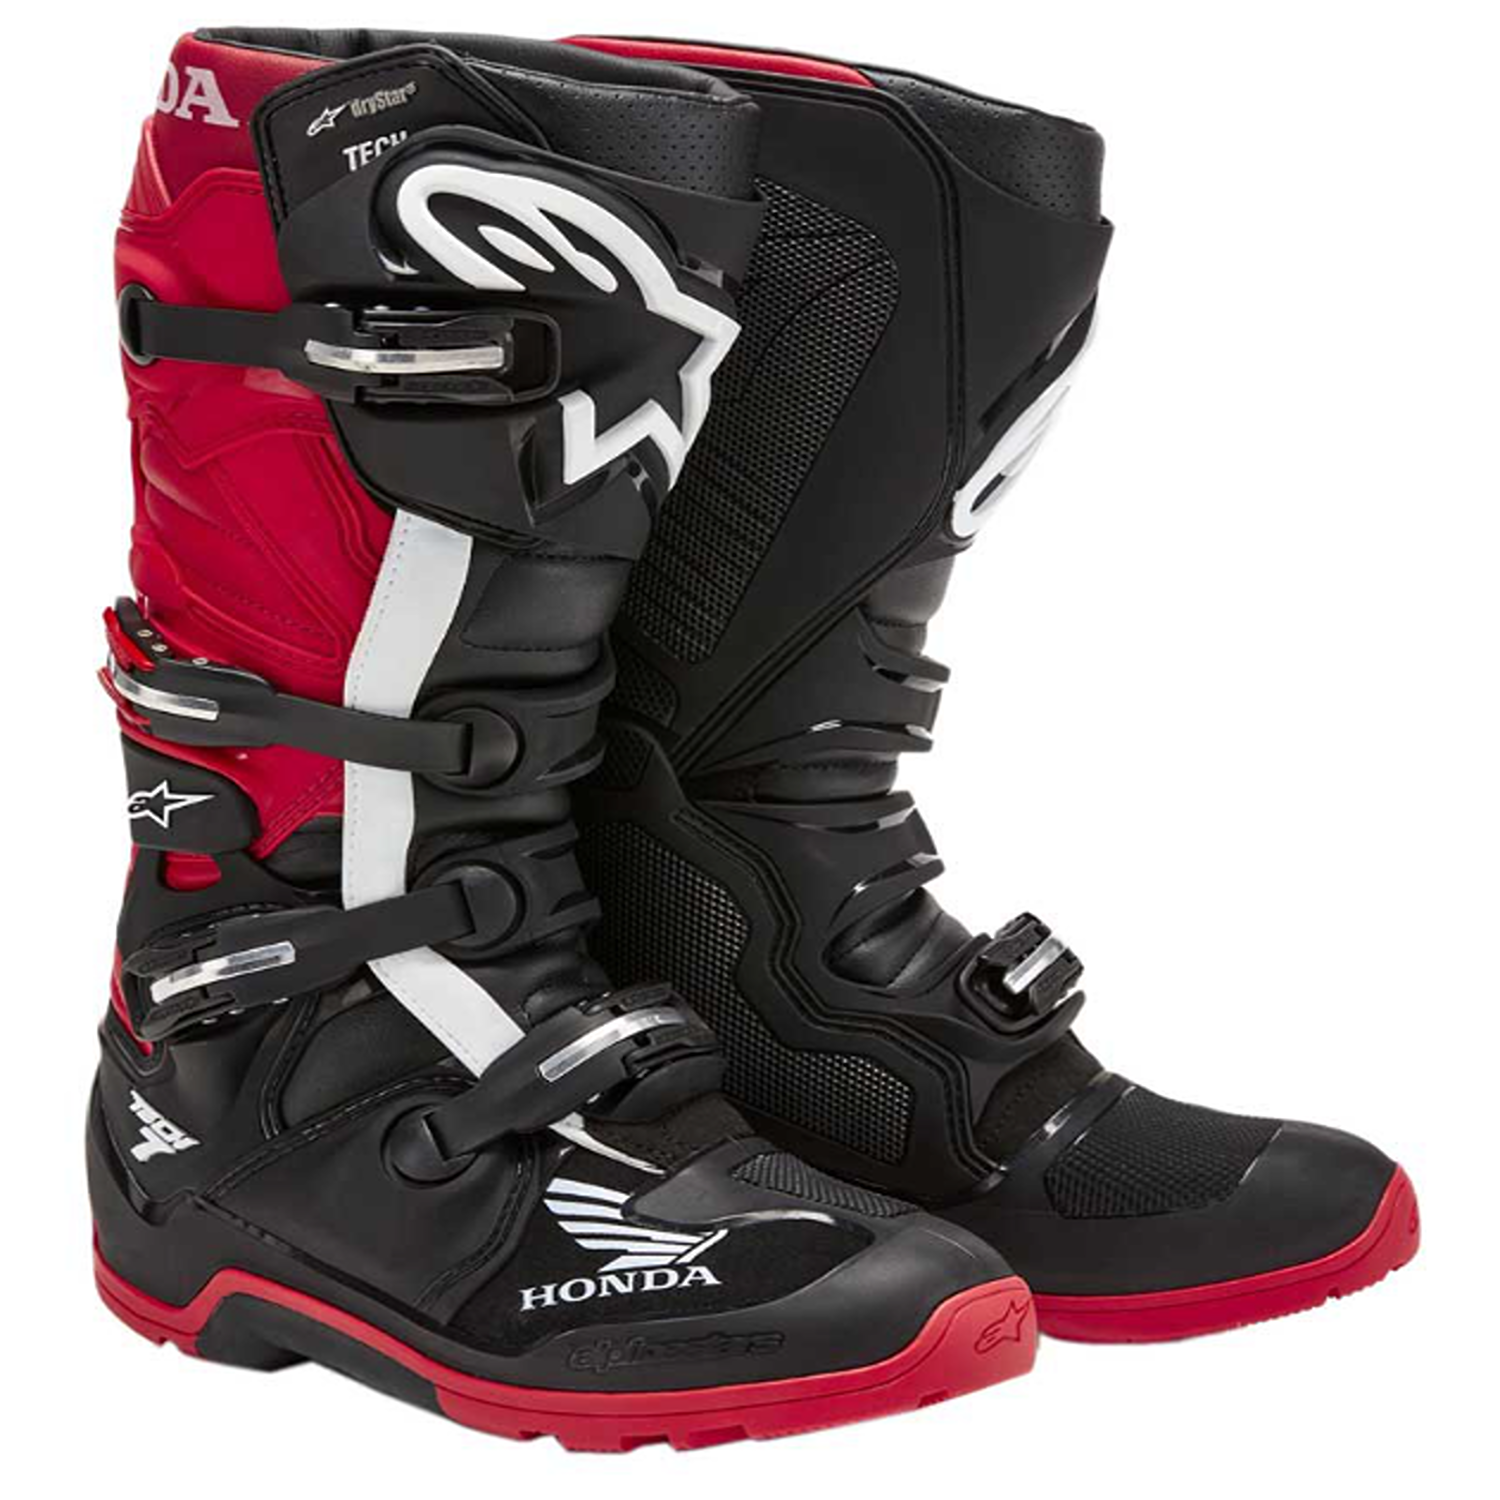 Image of Alpinestars Honda Tech 7 Enduro Drystar Boots Black Bright Red Size US 16 EN